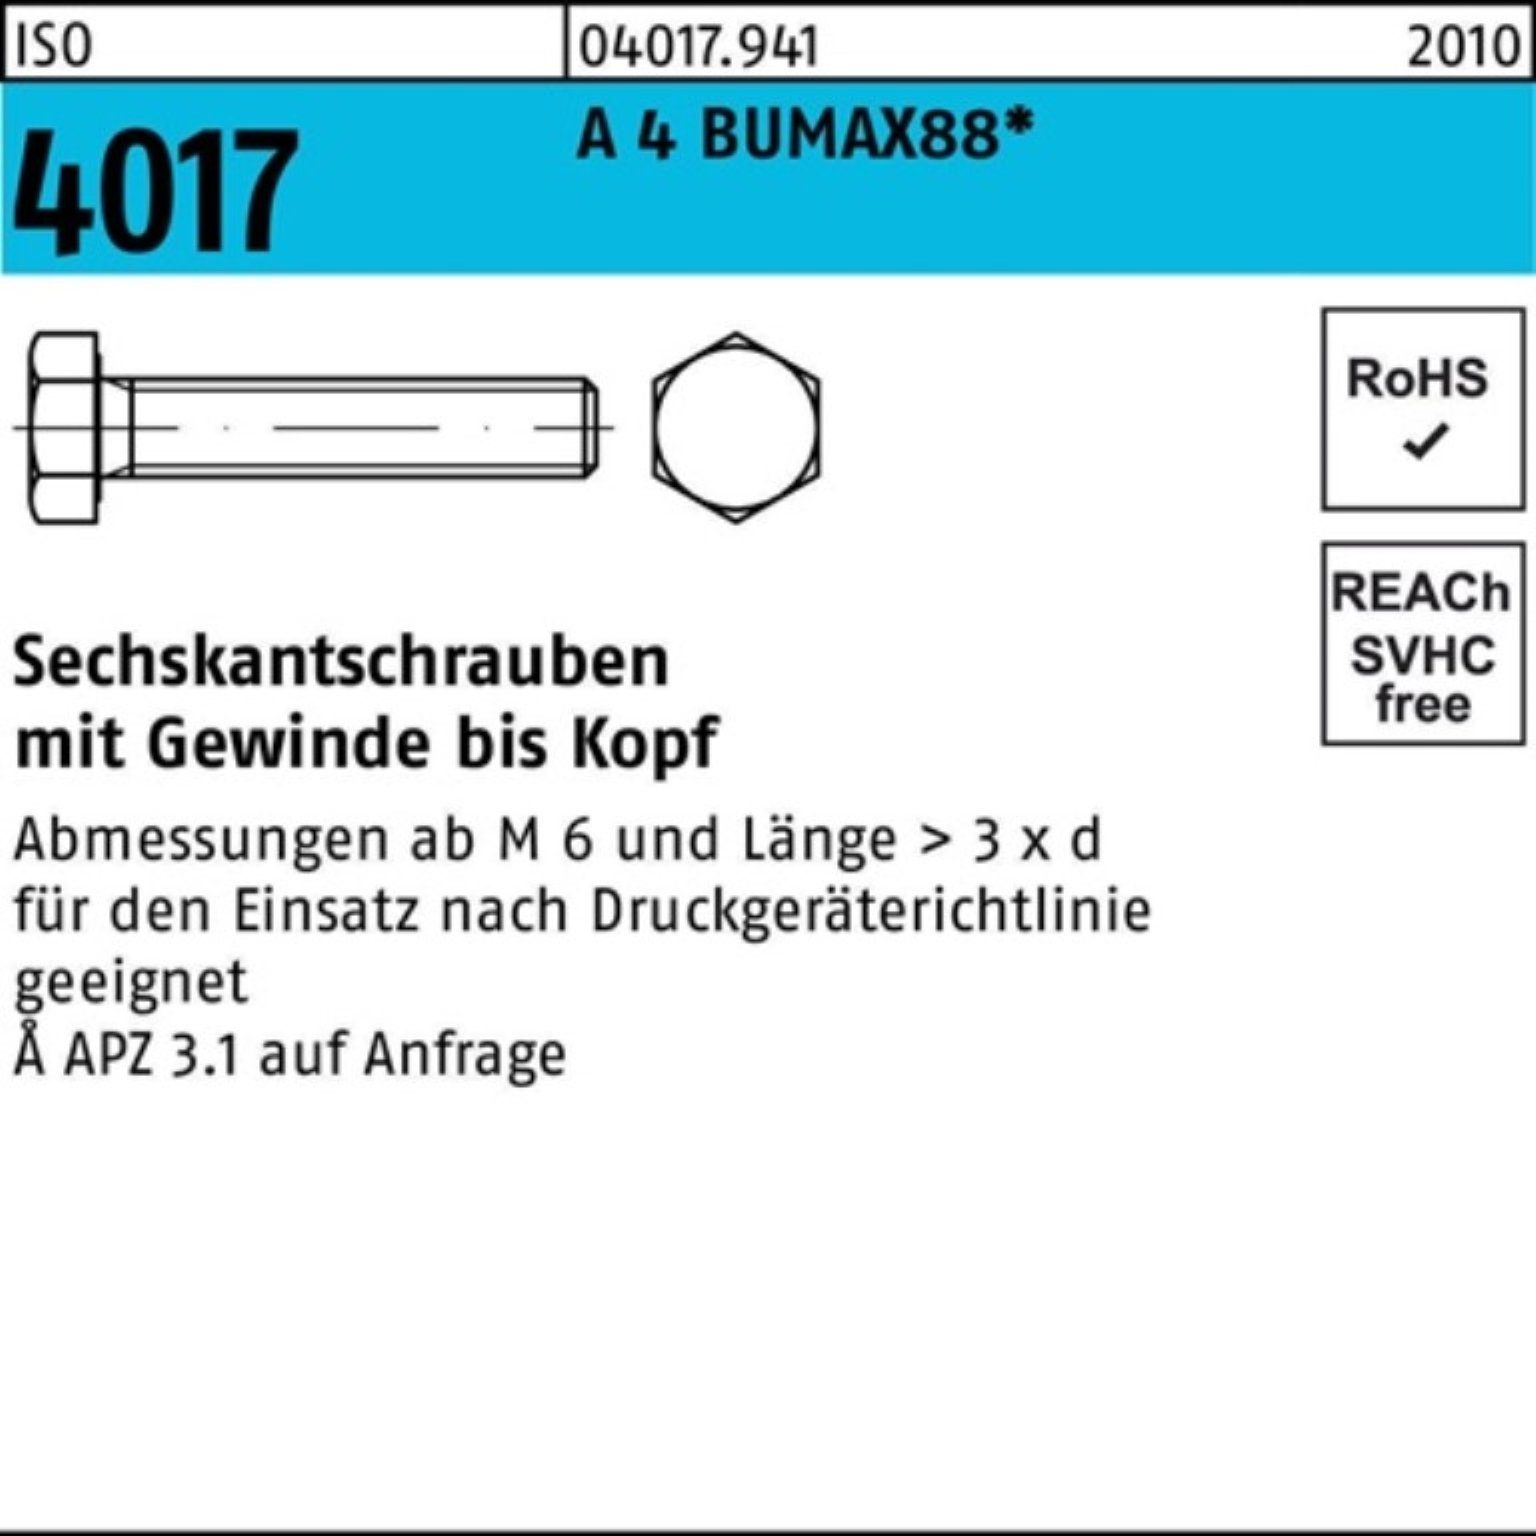 Bufab Sechskantschraube 100er Pack Sechskantschraube ISO 4017 VG M10x 20 A 4 BUMAX88 50 Stück